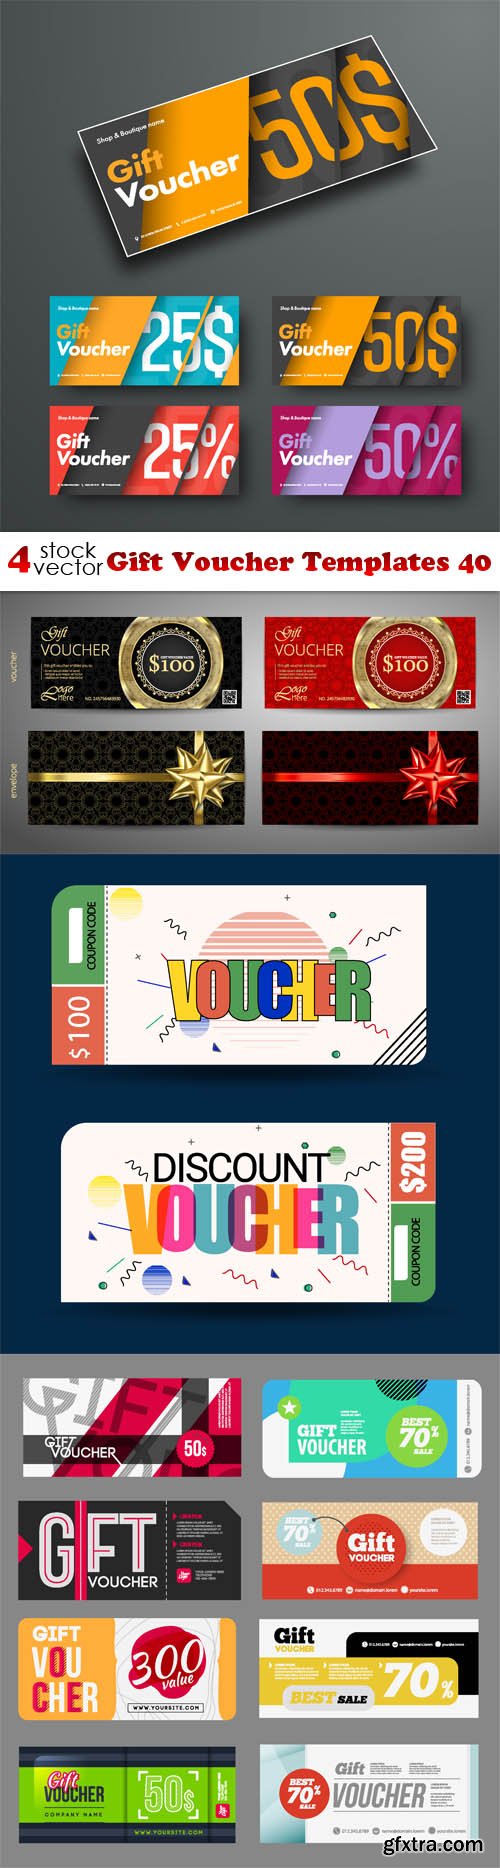 Vectors - Gift Voucher Templates 40